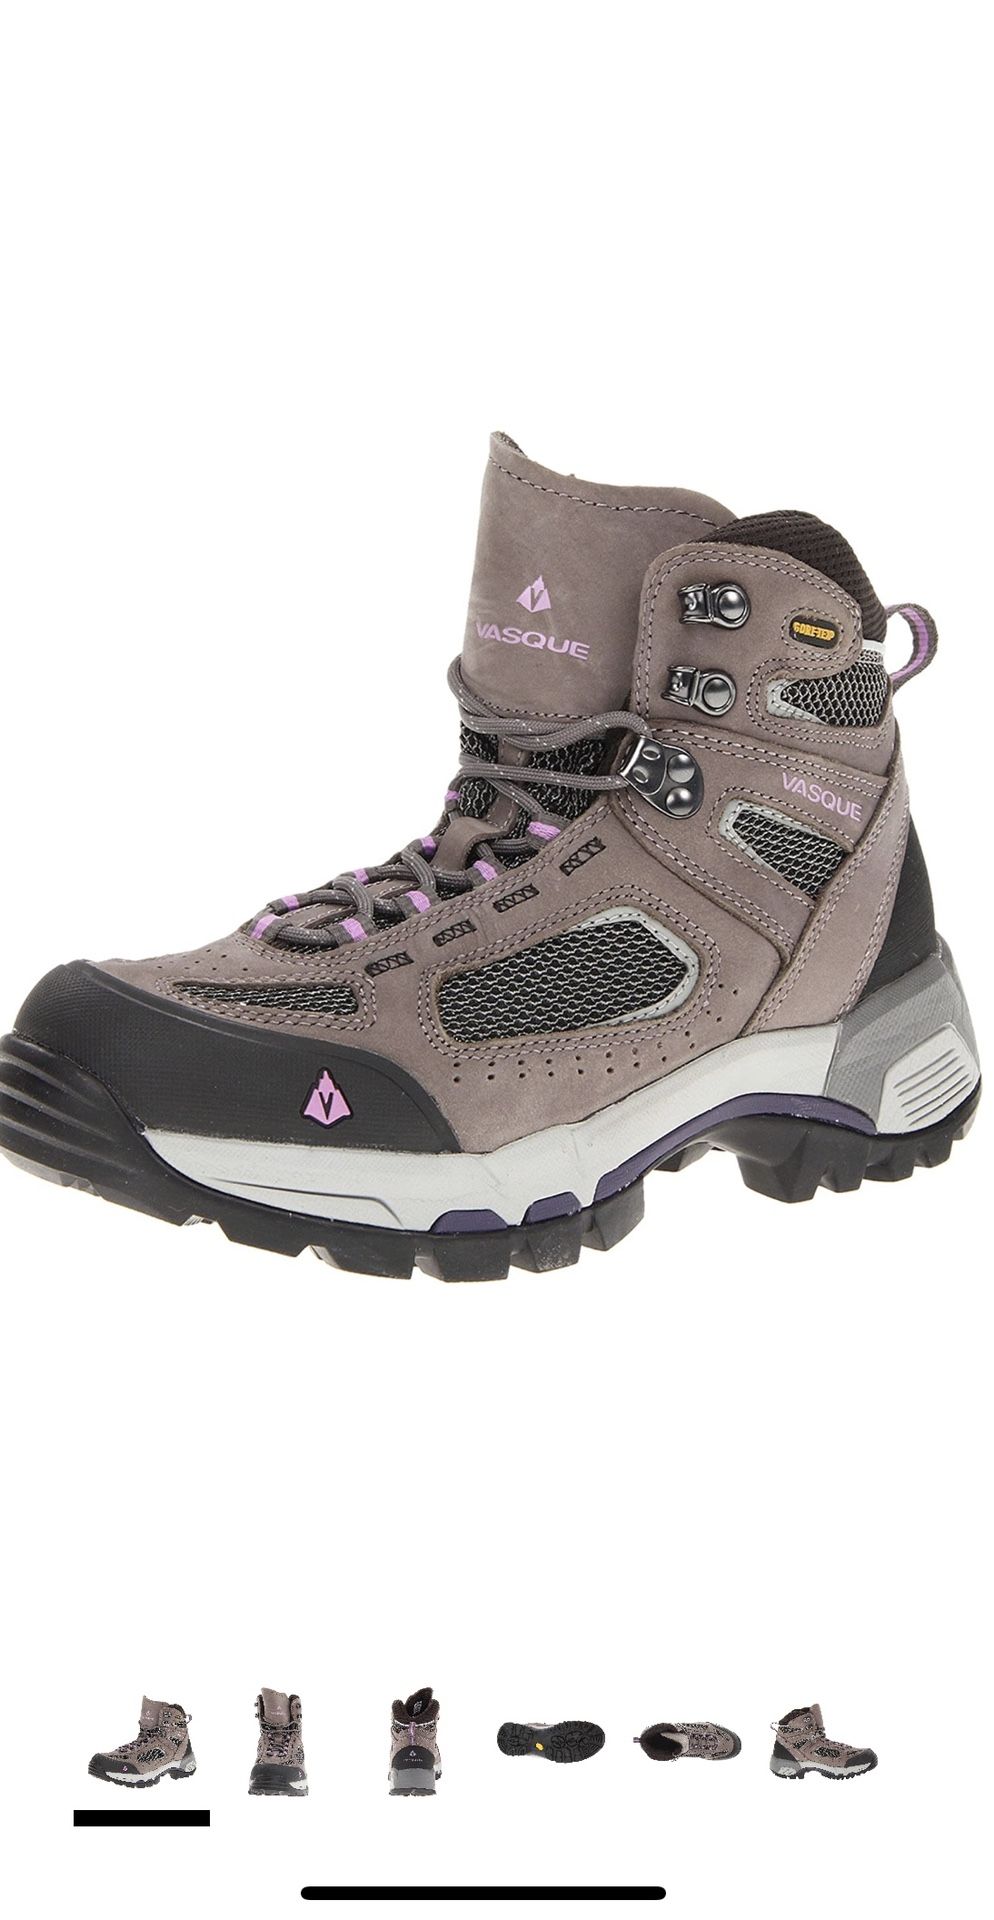 Sz 8 Vasque Women’s Waterproof Gore-Tex hiking boot